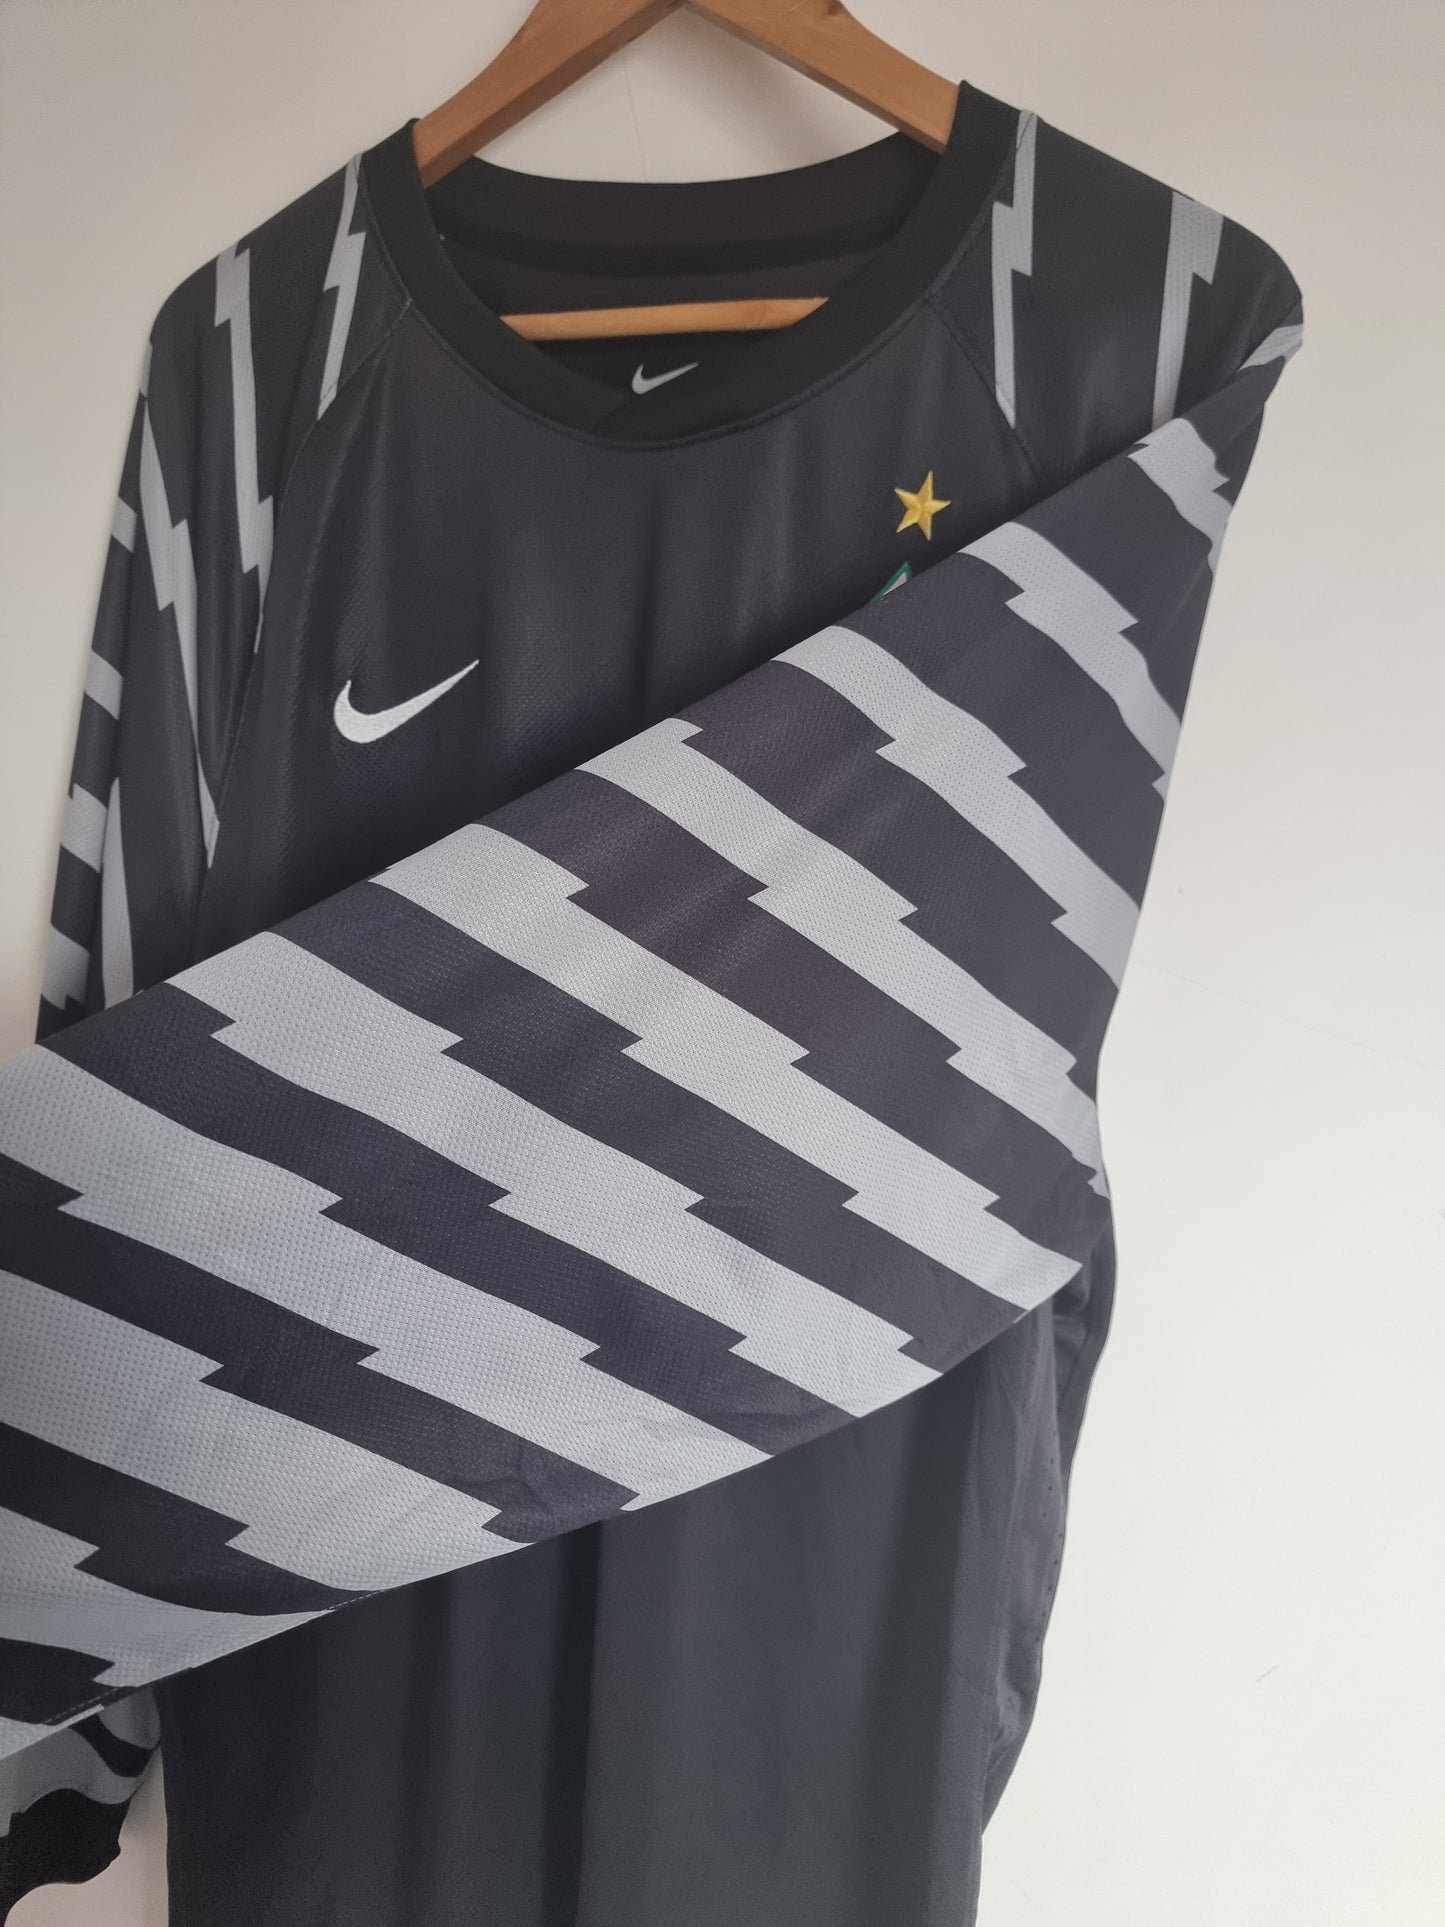 Nike Werder Bremen 10/11 Long Sleeve Player Spec Goalkeeper Shirt XXL